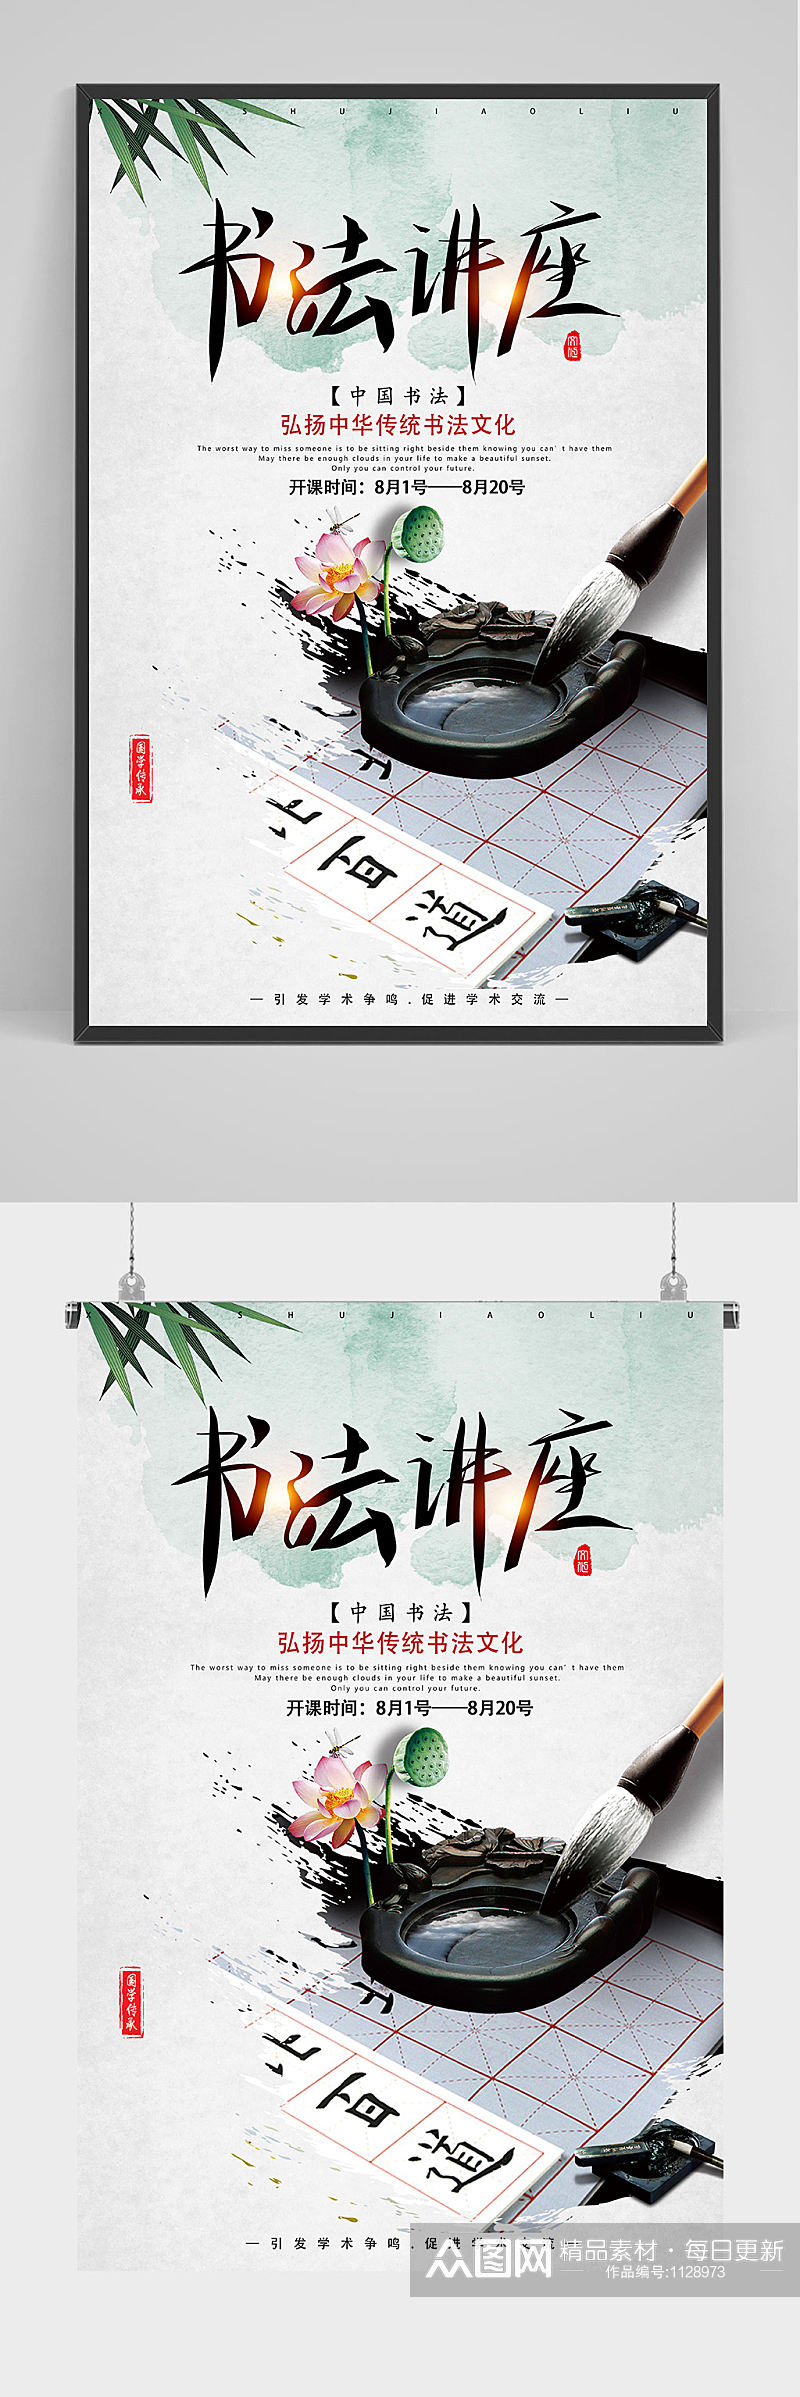 中国风书法讲座海报设计素材